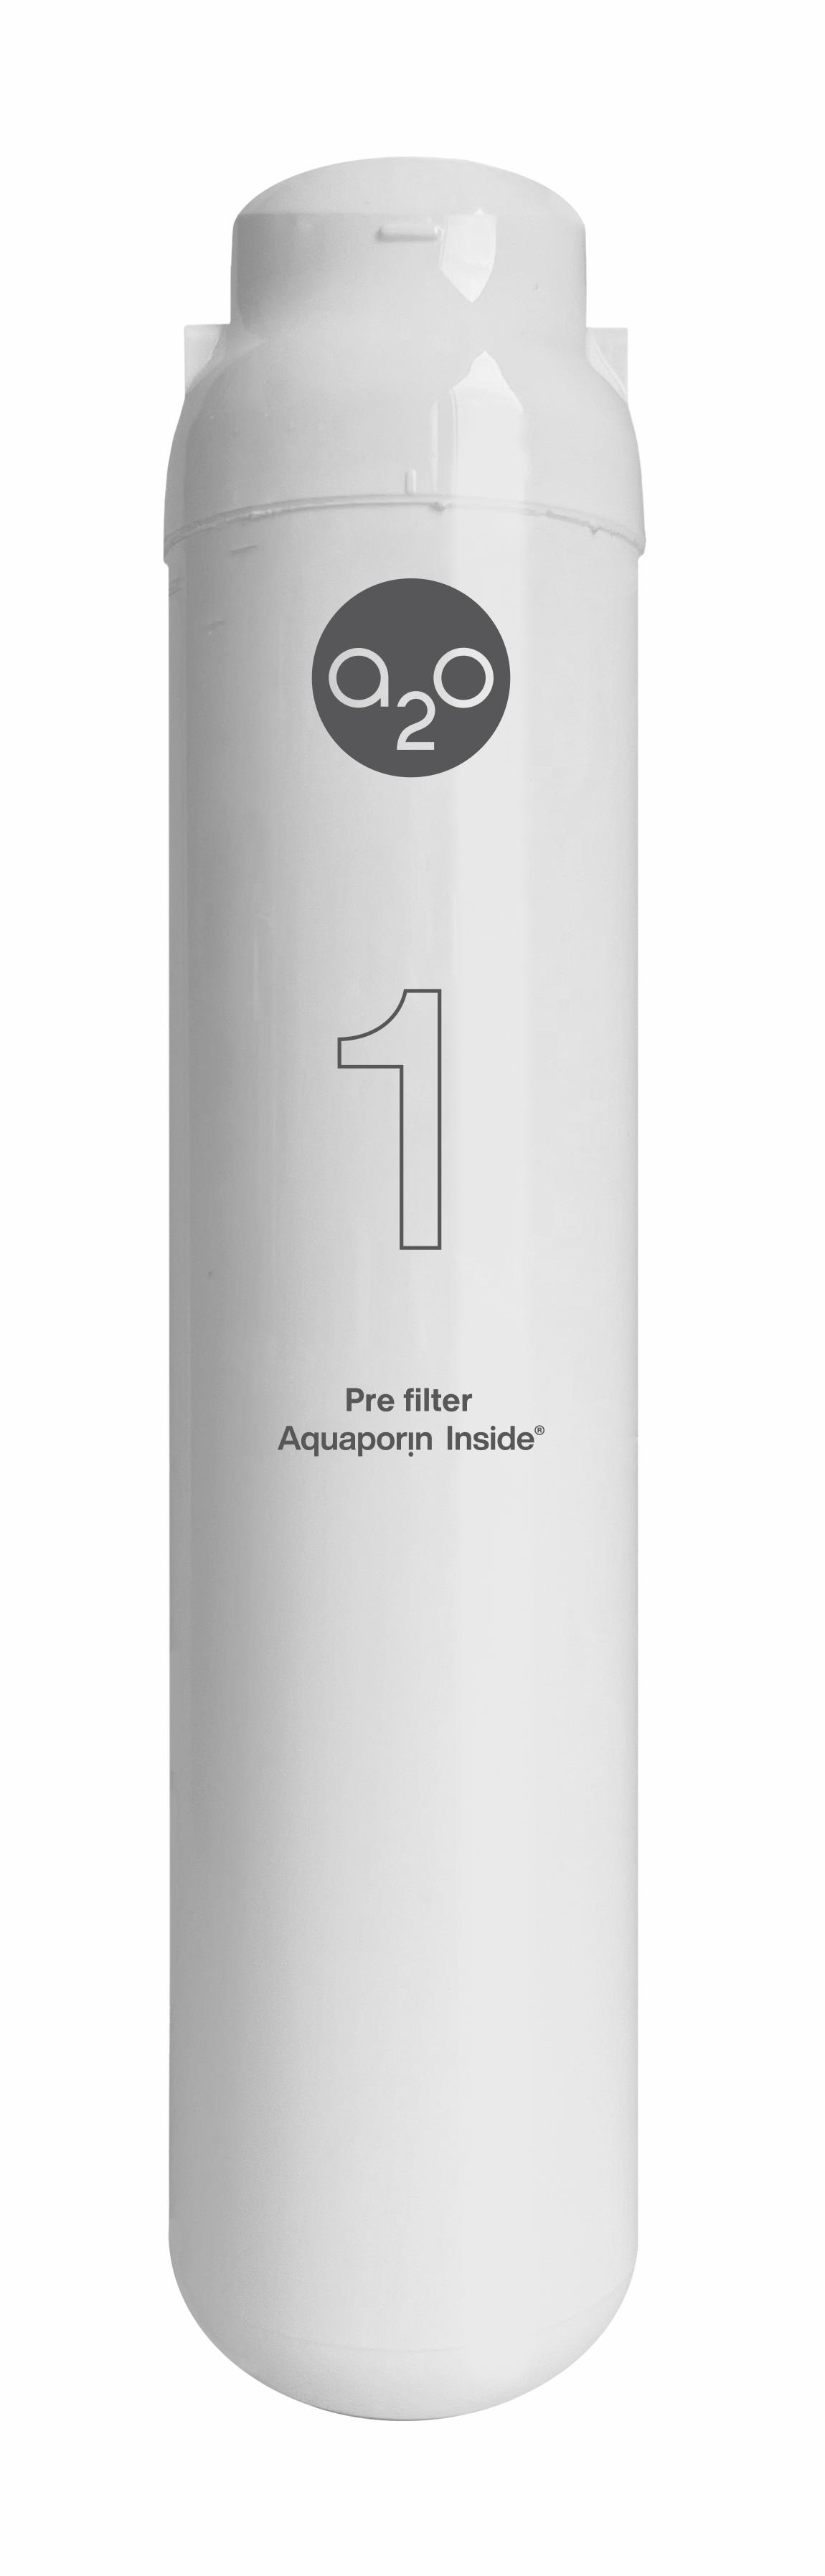 Aquaporin A2O Bar PRE filter